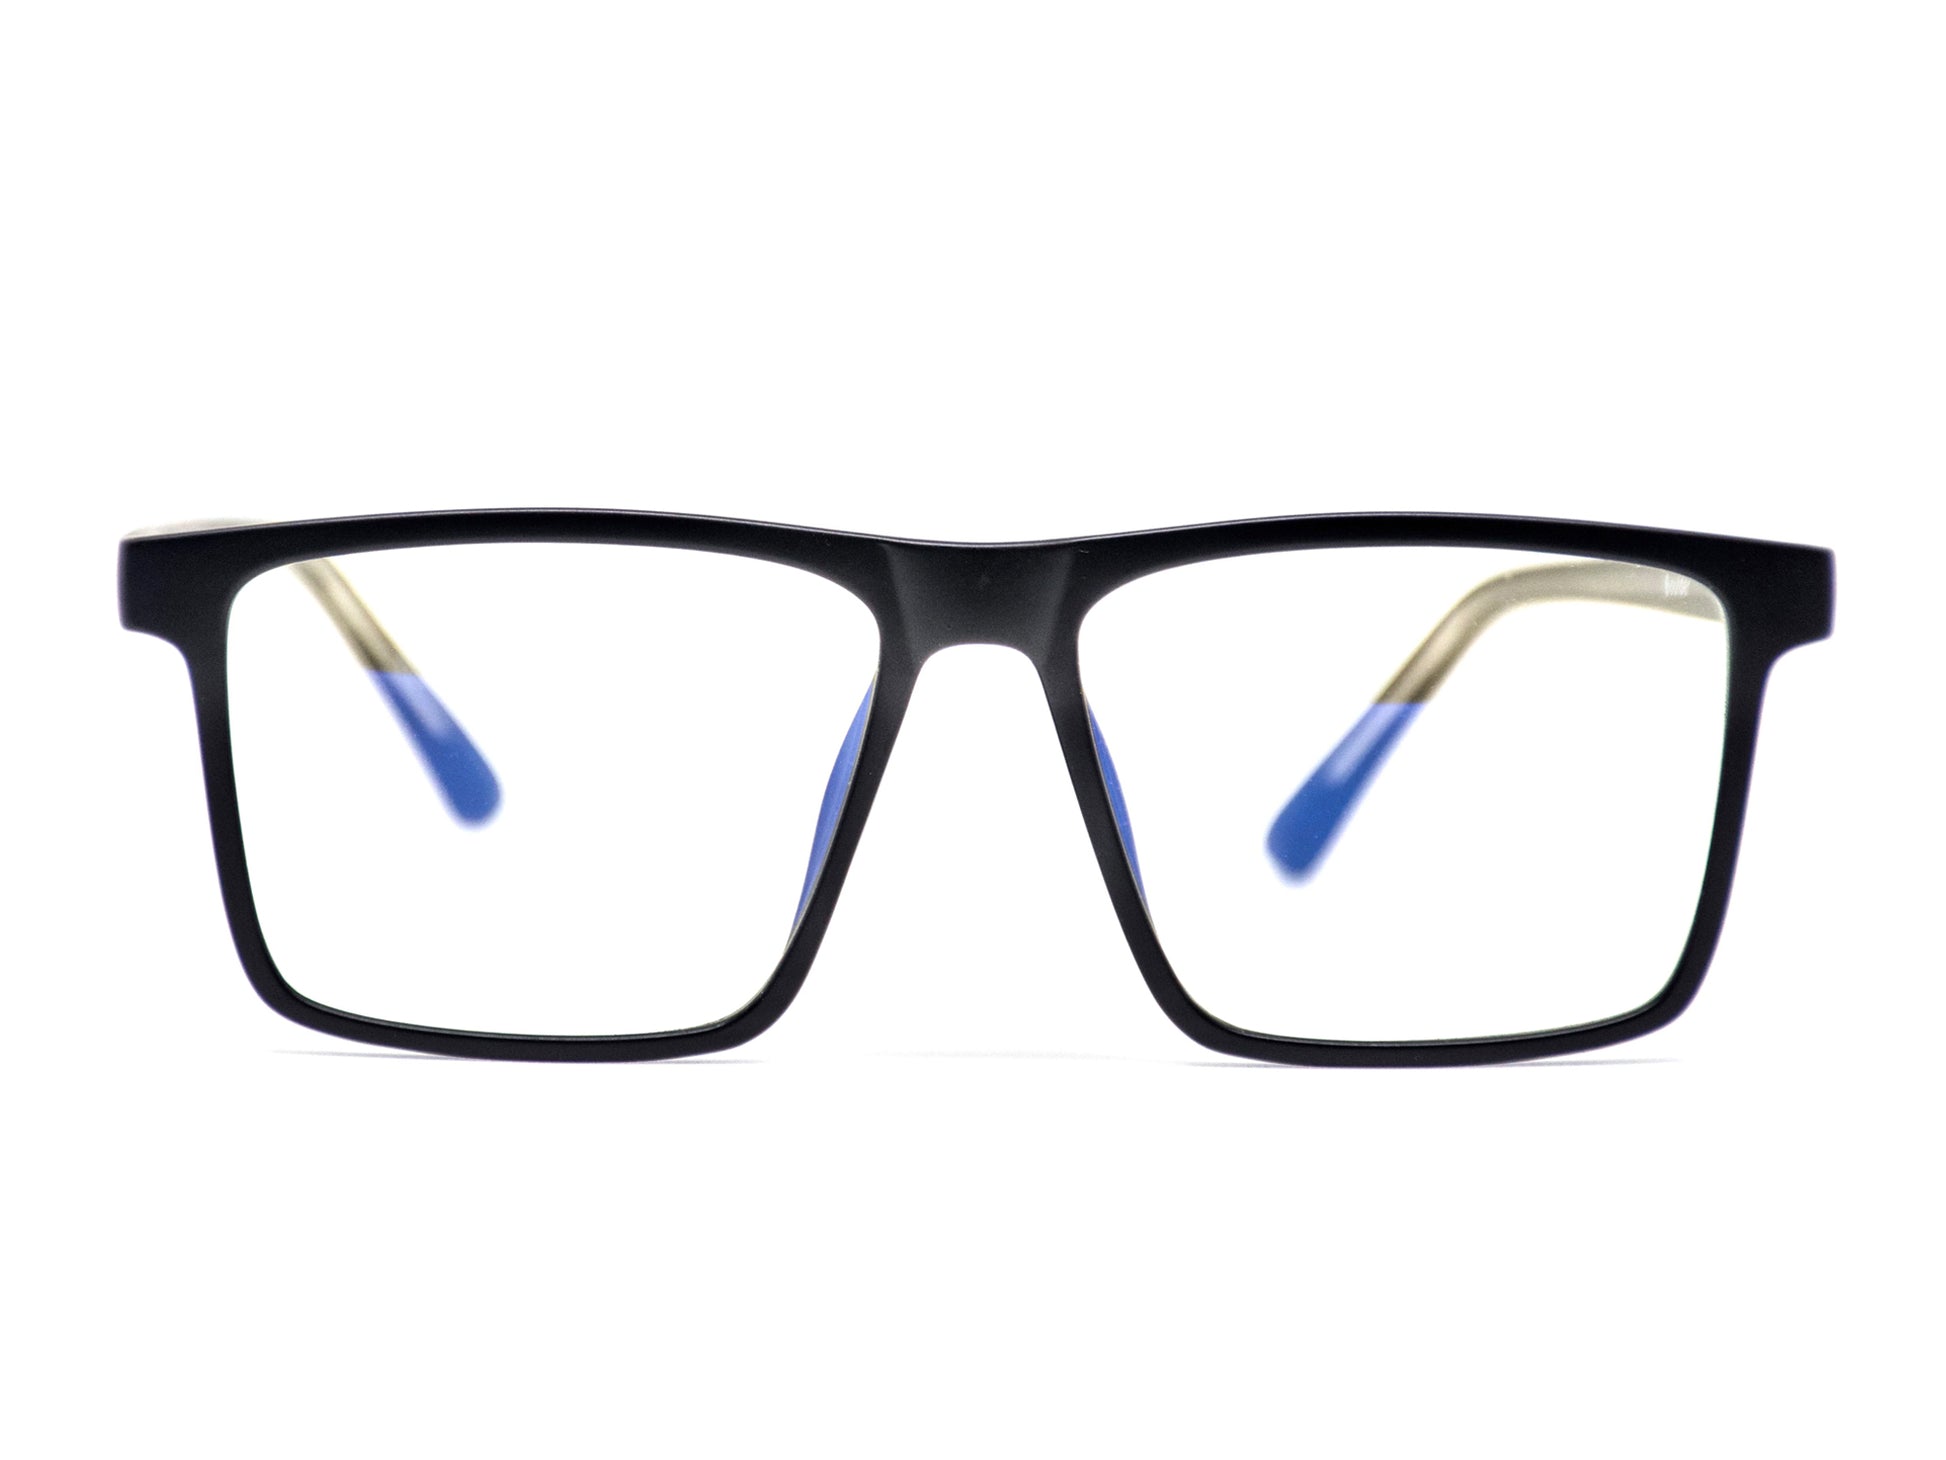 Tactical, bold, Boulder fashionable gamer men's blue light blocking frames and glasses.